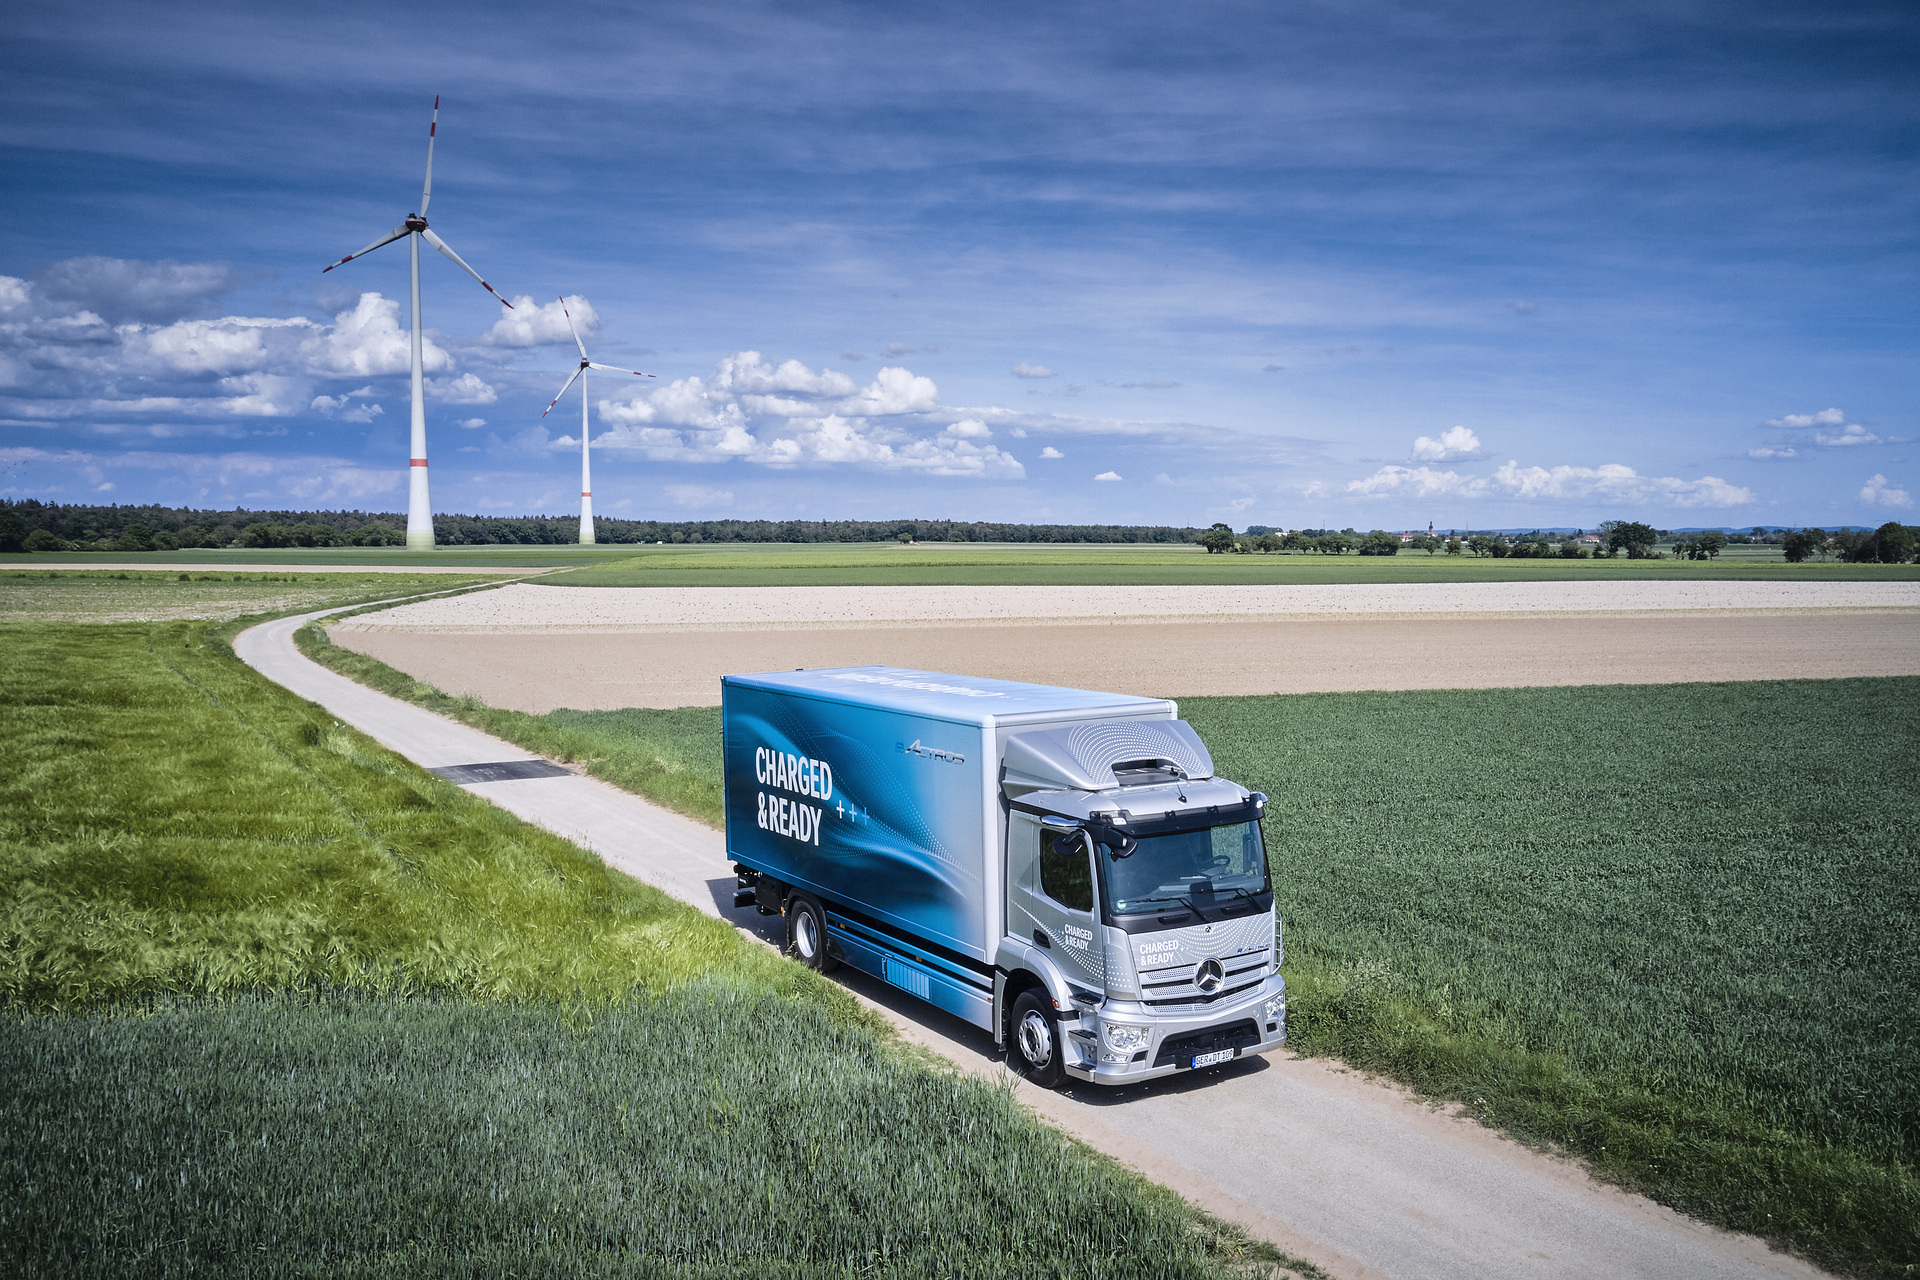 Daimler Truck veröffentlicht Nachhaltigkeitsbericht 2021: Klarer Fokus auf ganzheitlichem Nachhaltigkeitsverständnis mit Bekenntnis zur CO2-Neutralität bis 2039